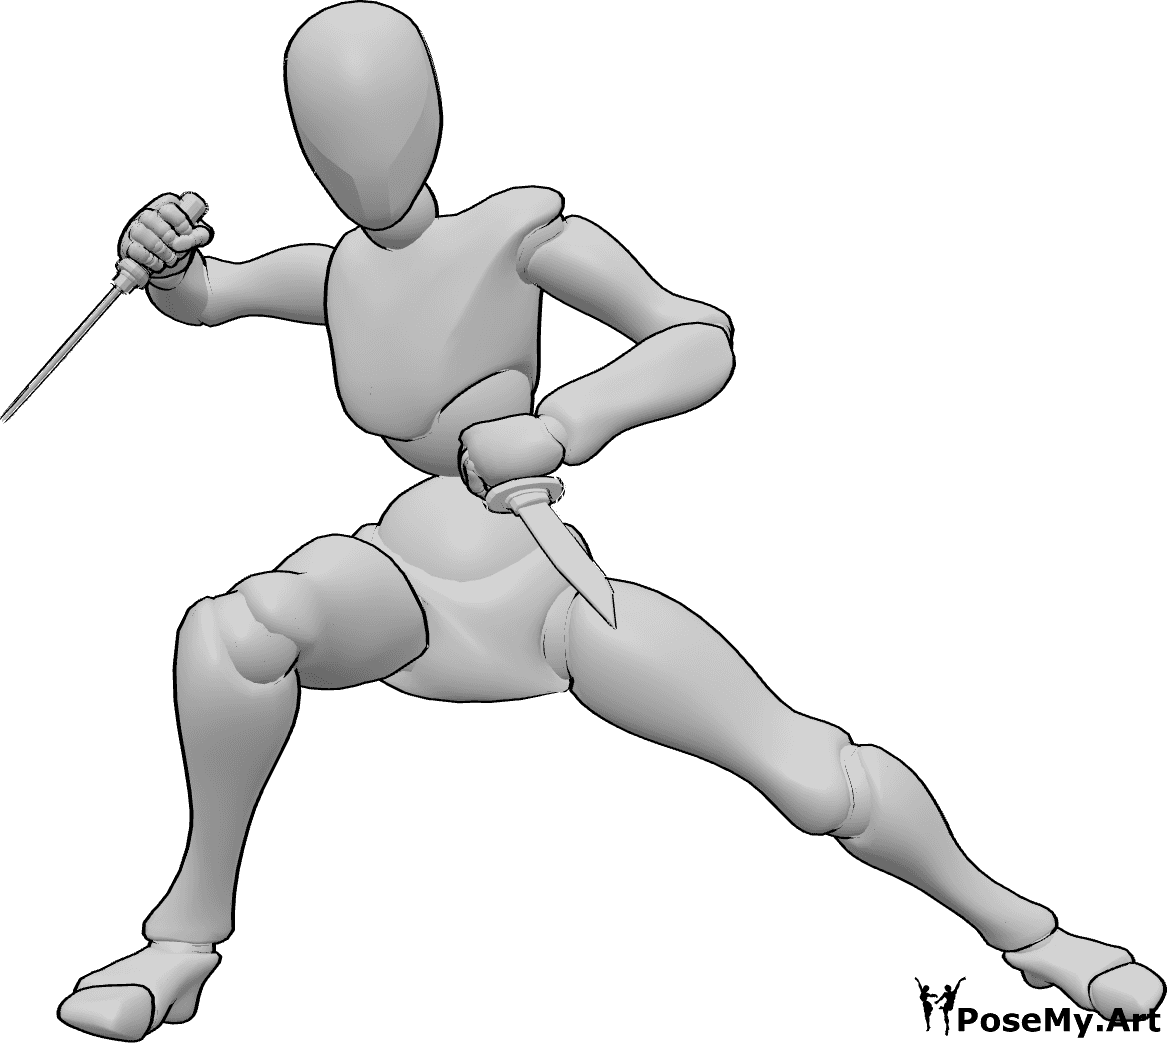 Referência de poses- Pose de luta com punhal - Mulher segura dois punhais e está pronta para lutar, pose de luta com faca